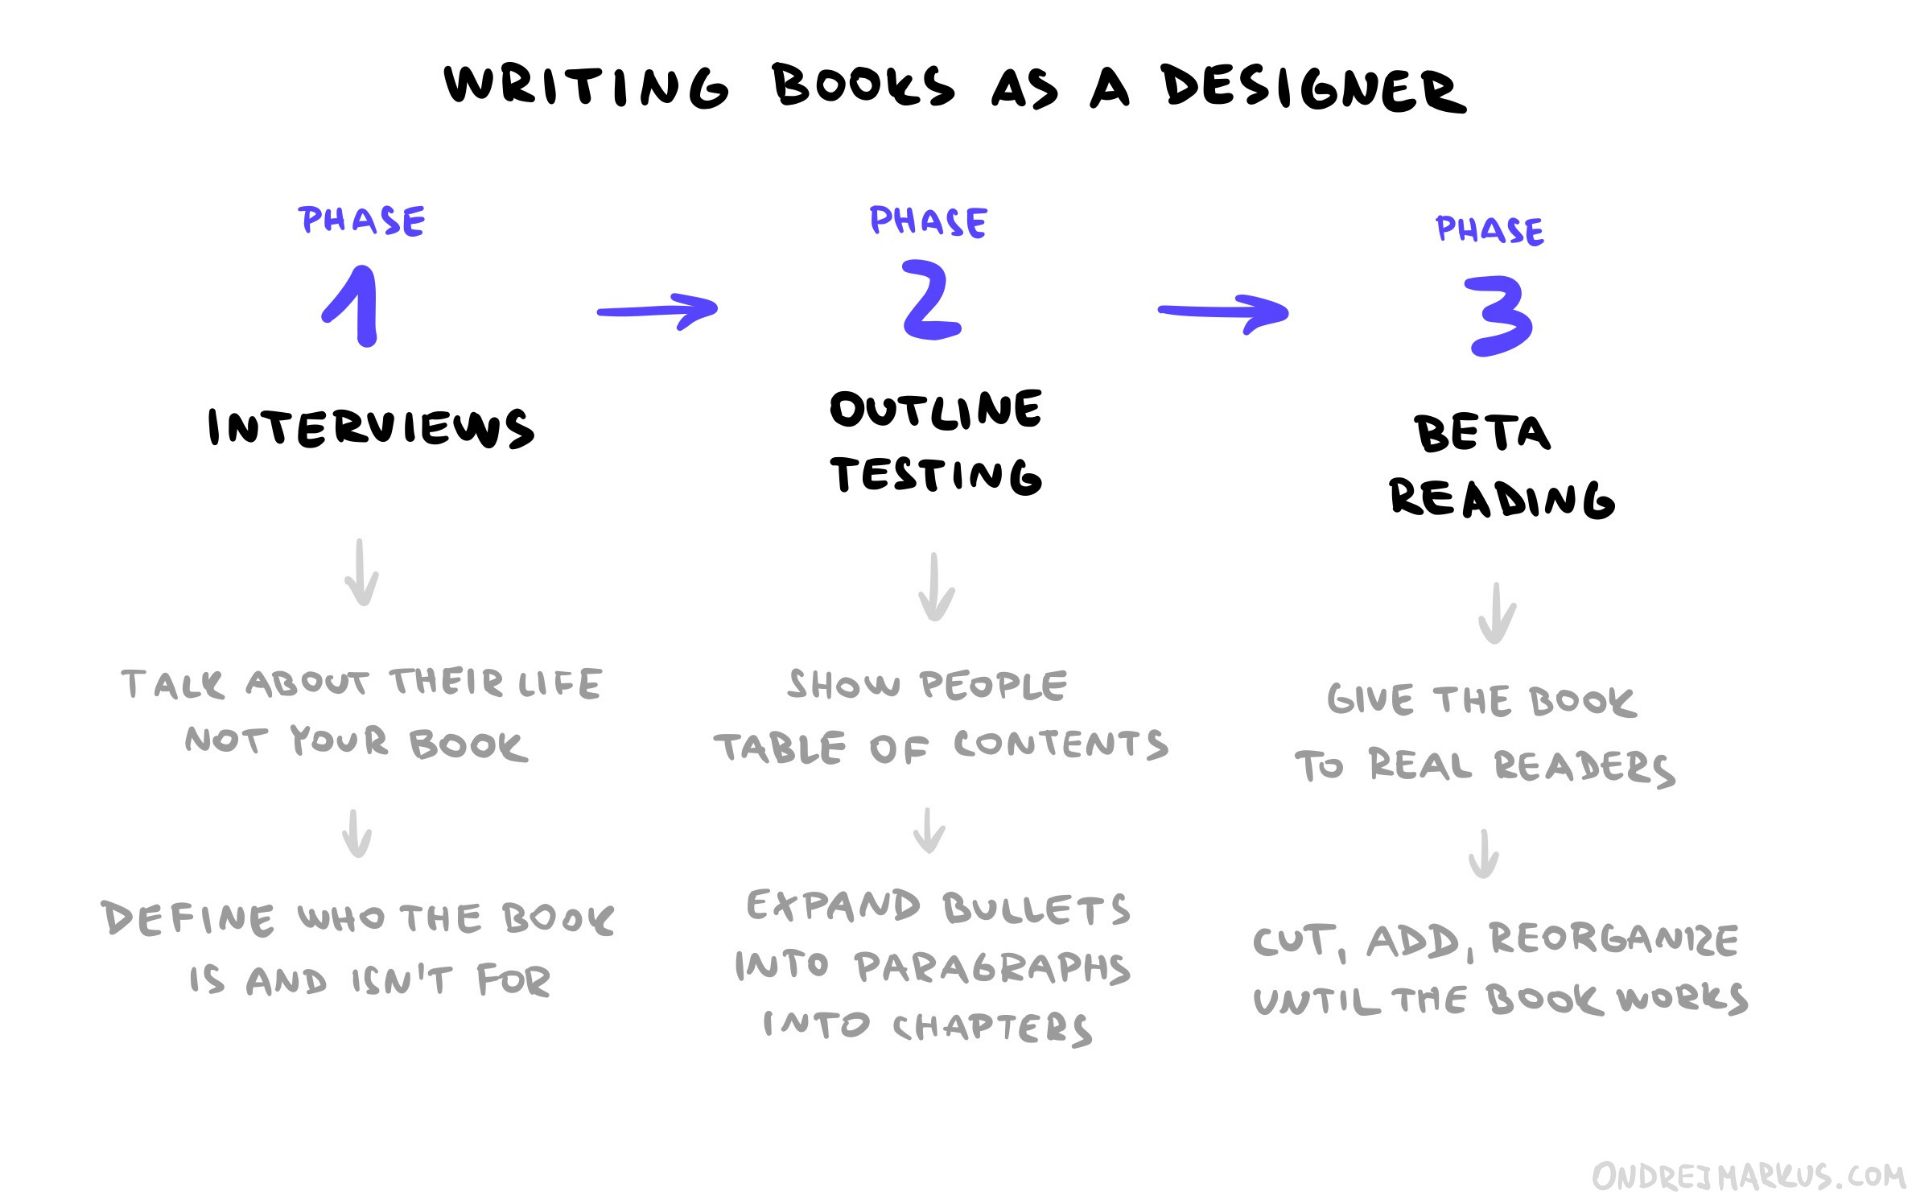 Writing books as a designer